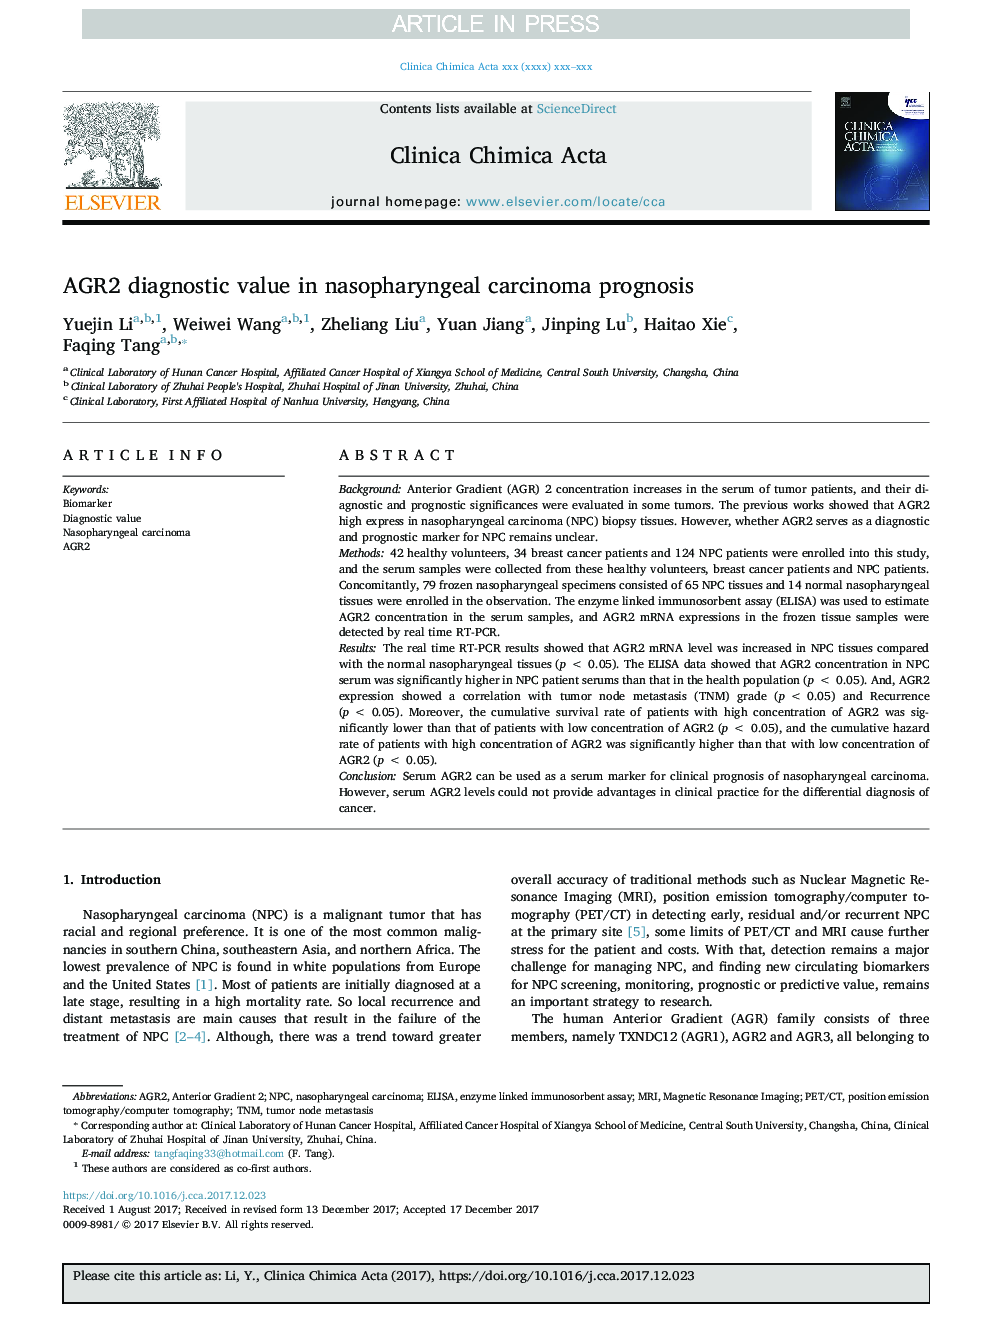 AGR2 diagnostic value in nasopharyngeal carcinoma prognosis